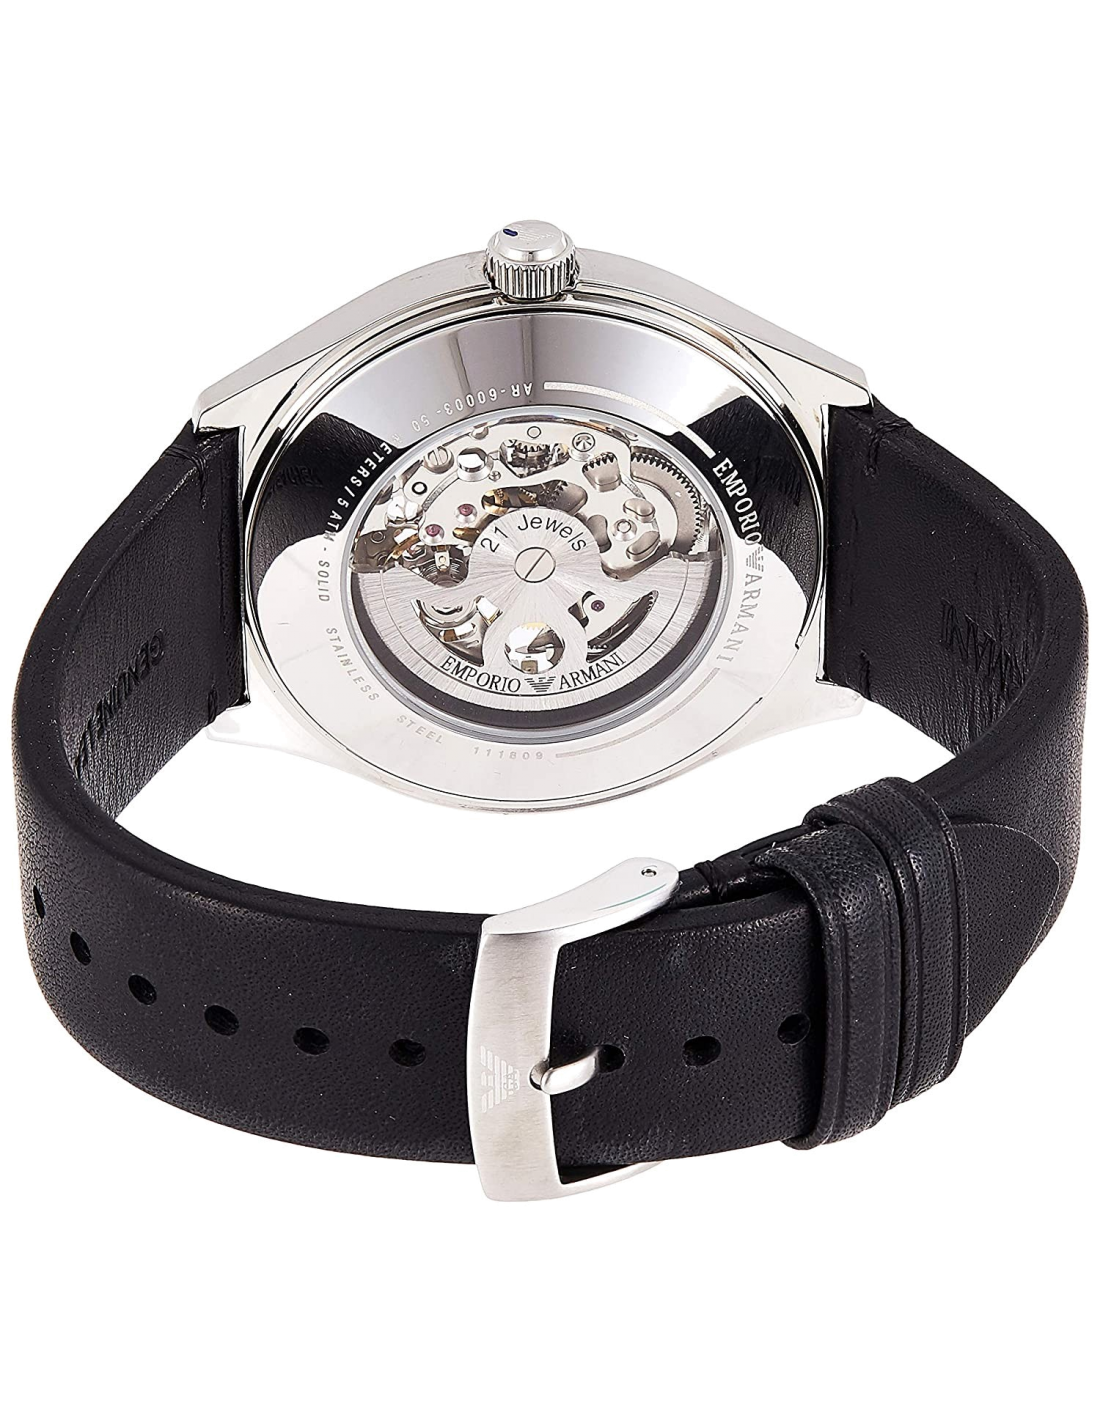 Emporio Armani Meccanico Skeleton White Dial Black Leather Strap Watch For Men - AR60003